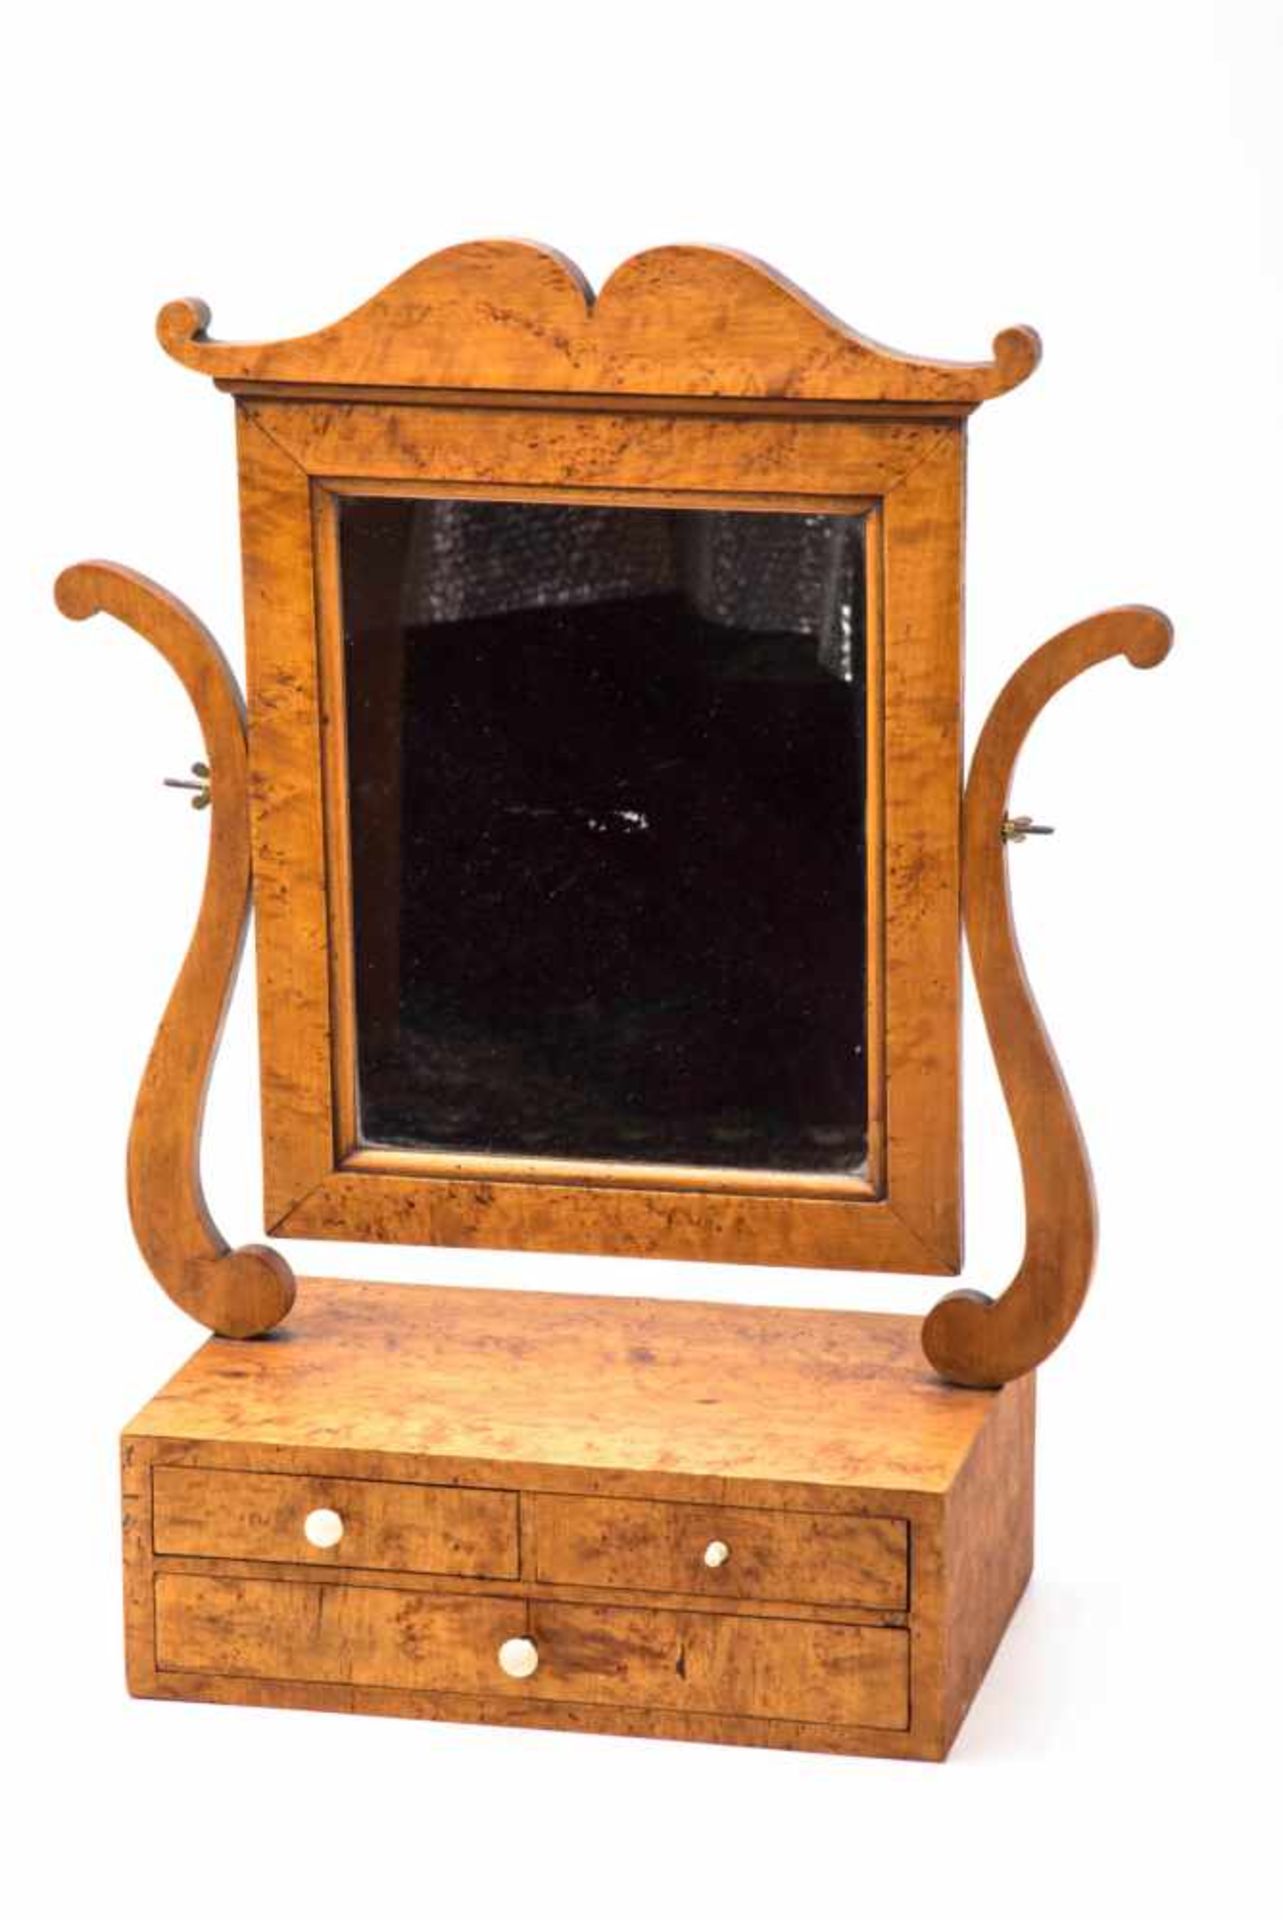 Tischspiegel, Biedermeier um 1840Birkenwurzelholz, furniert. Rechteckiger Kasten mit drei